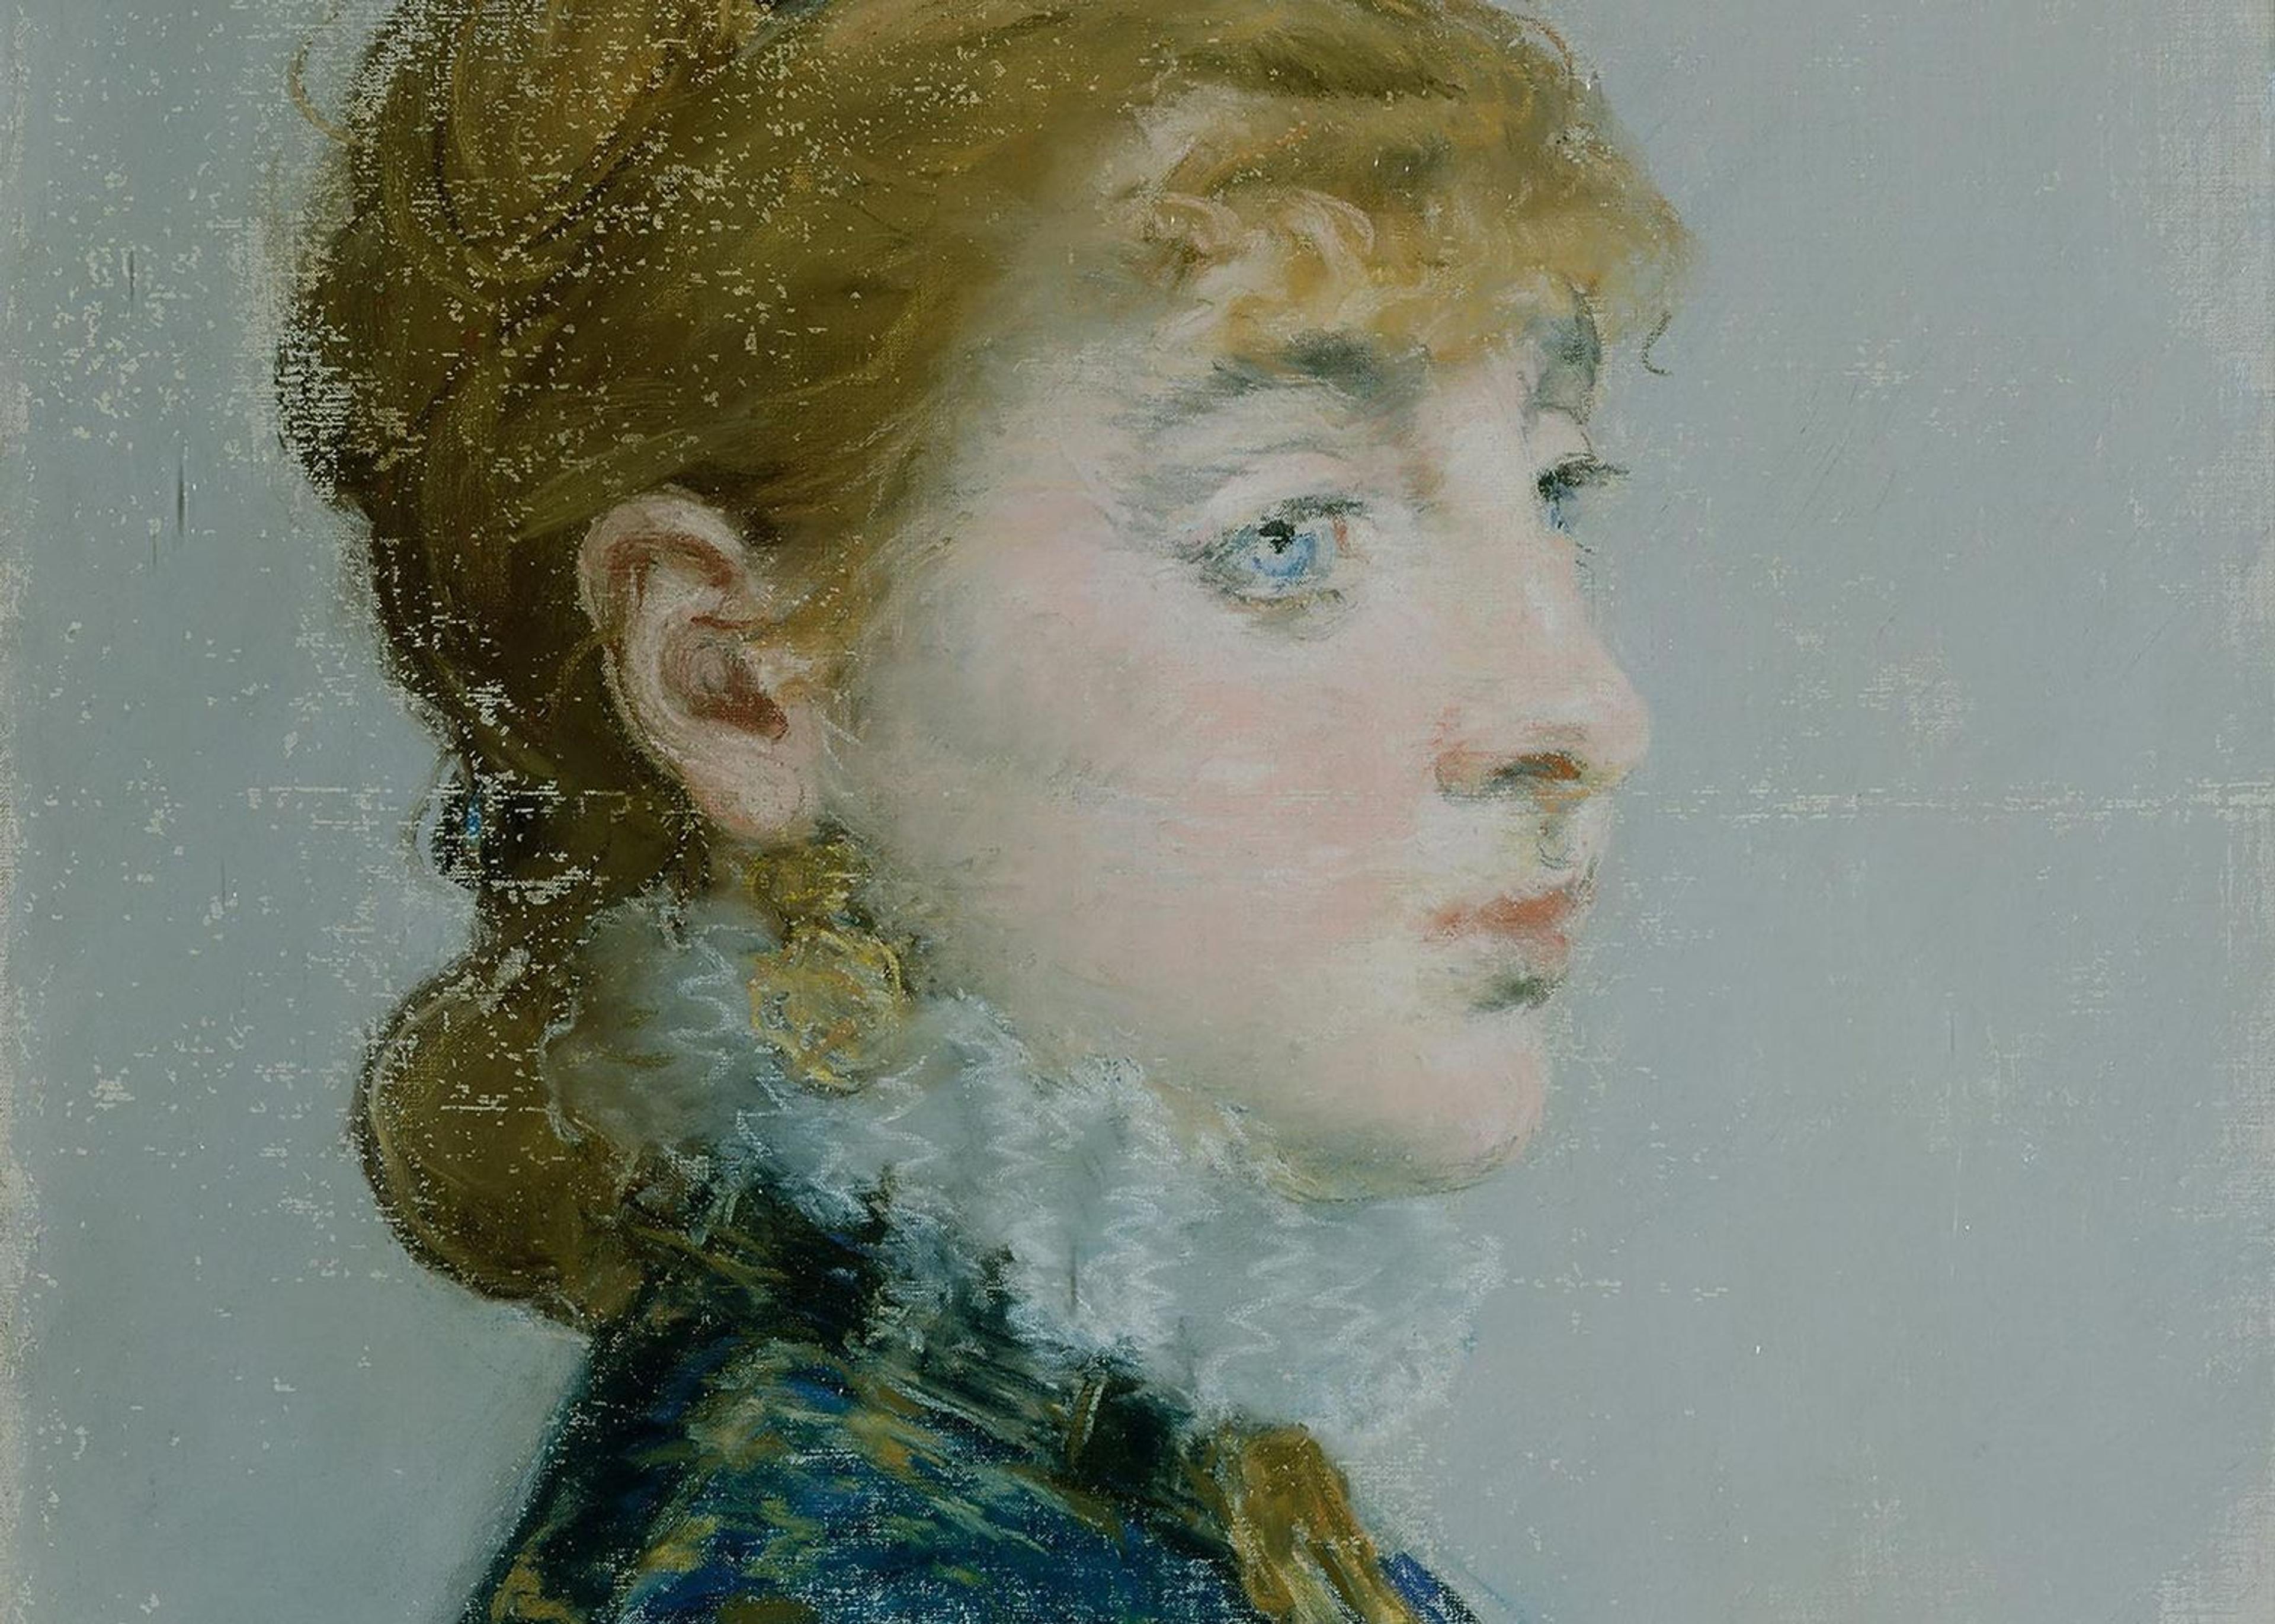 A pastel portrait of Emilie-Louise Delabigne on canvas by Matisse